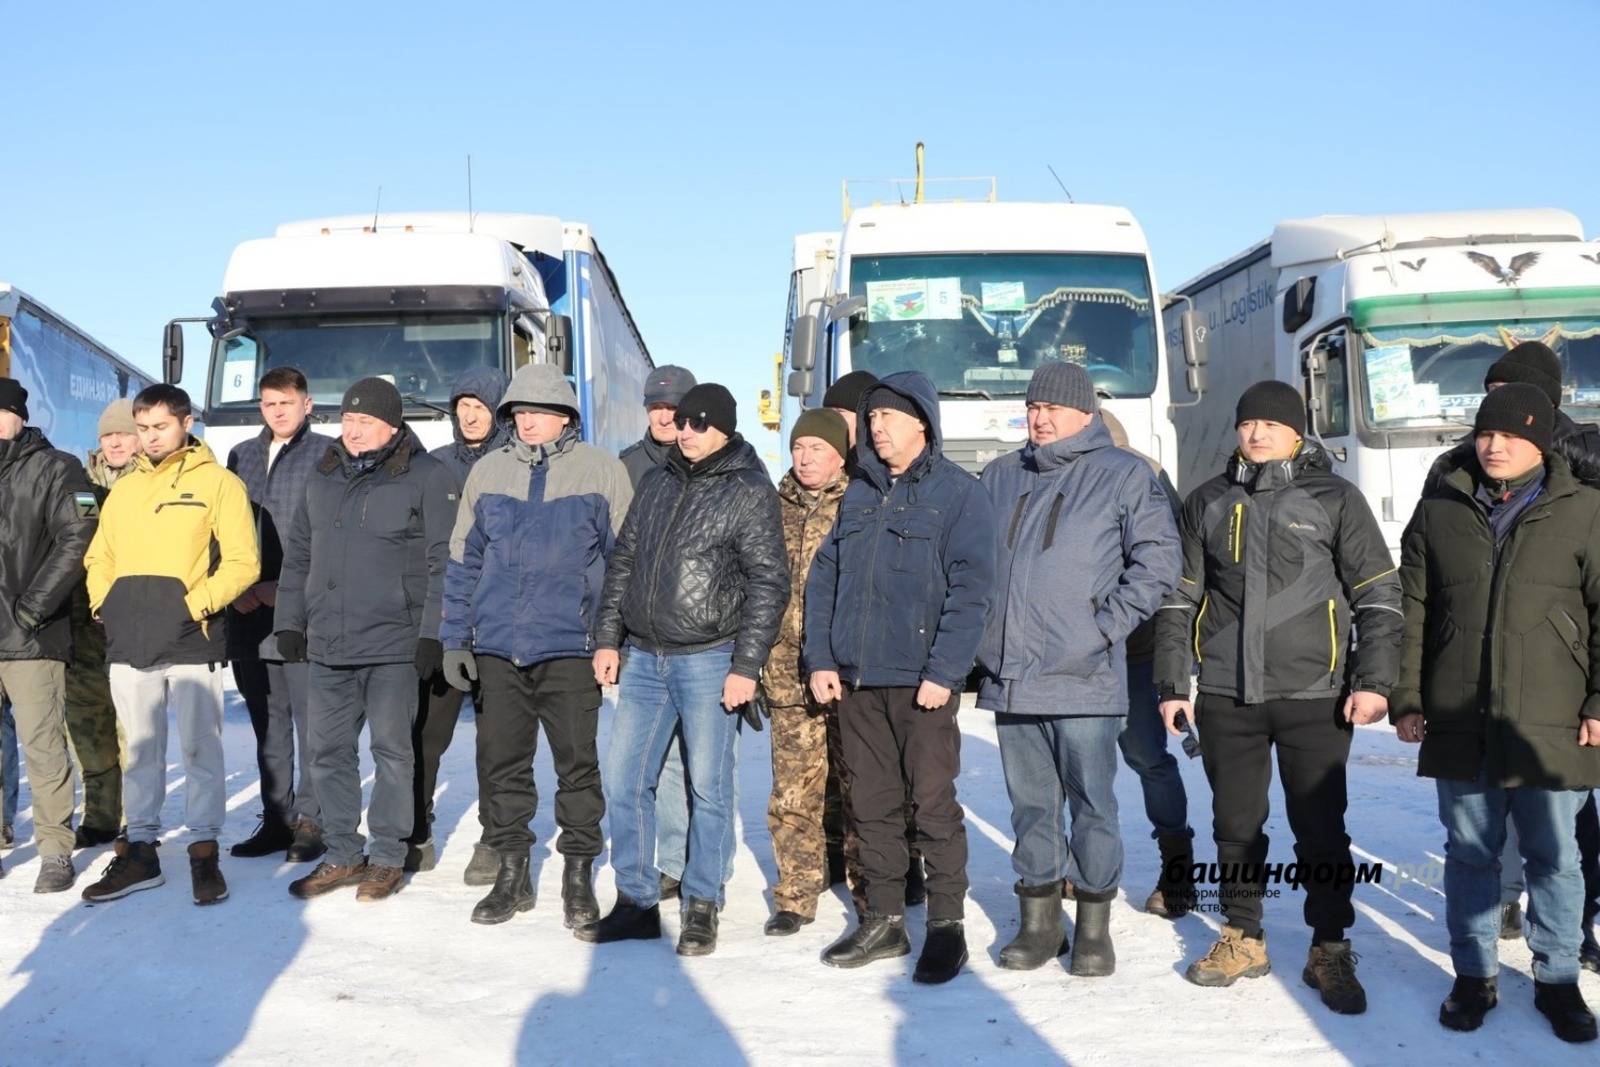 Глава администрации Кугарчинского района Марат Искужин планирует посетить место дислокации кугарчинцев.